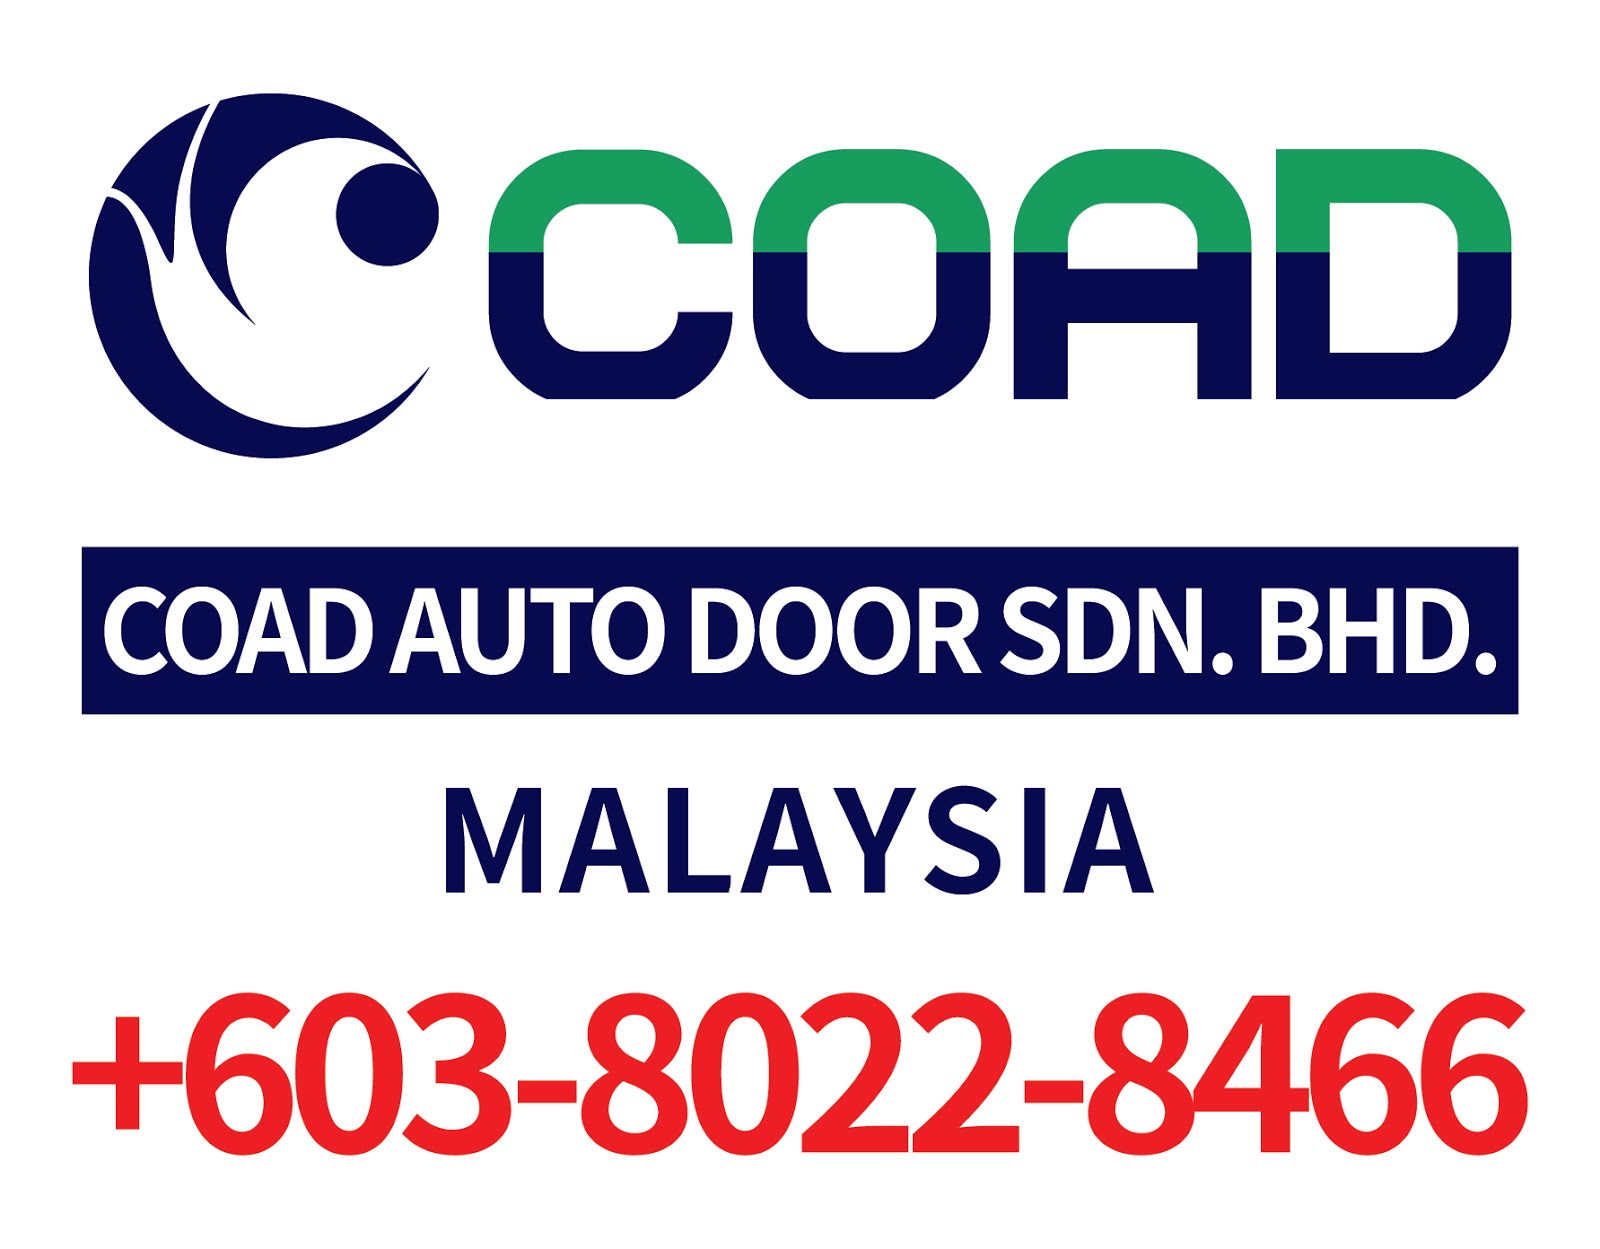 Coad High Speed Door Malaysia, Steel Roller Shutter Doors, Shutter Doors, Roll Up Door, High Speed 